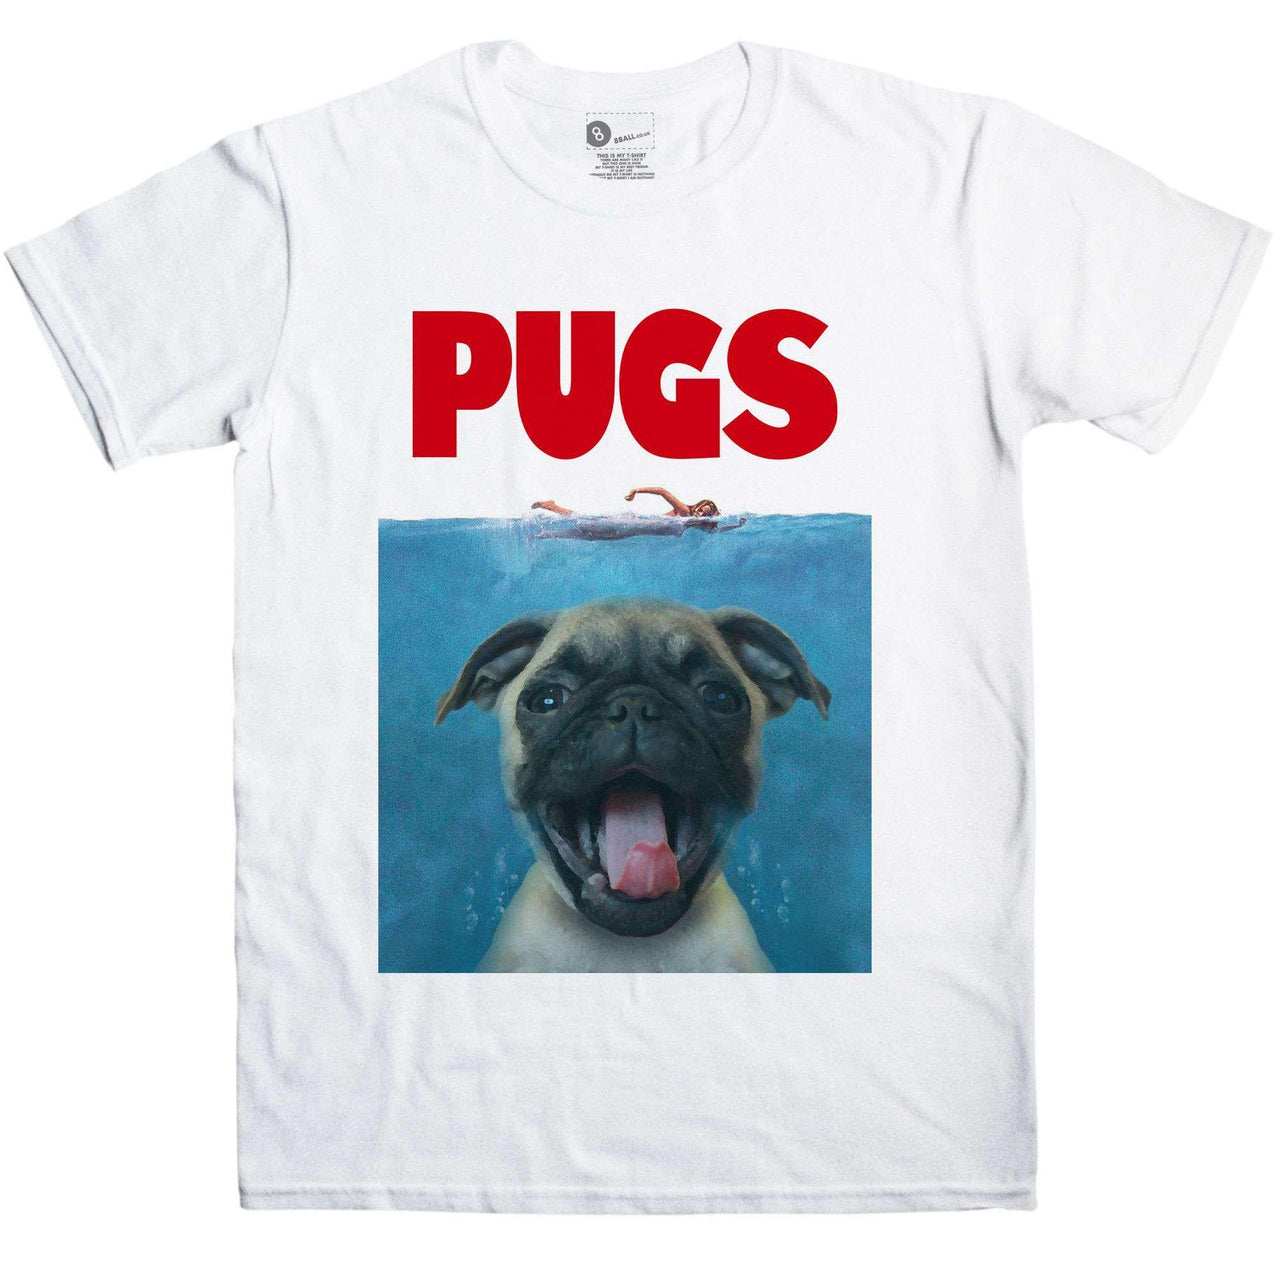 Pugs Spoof T-Shirt For Men 8Ball